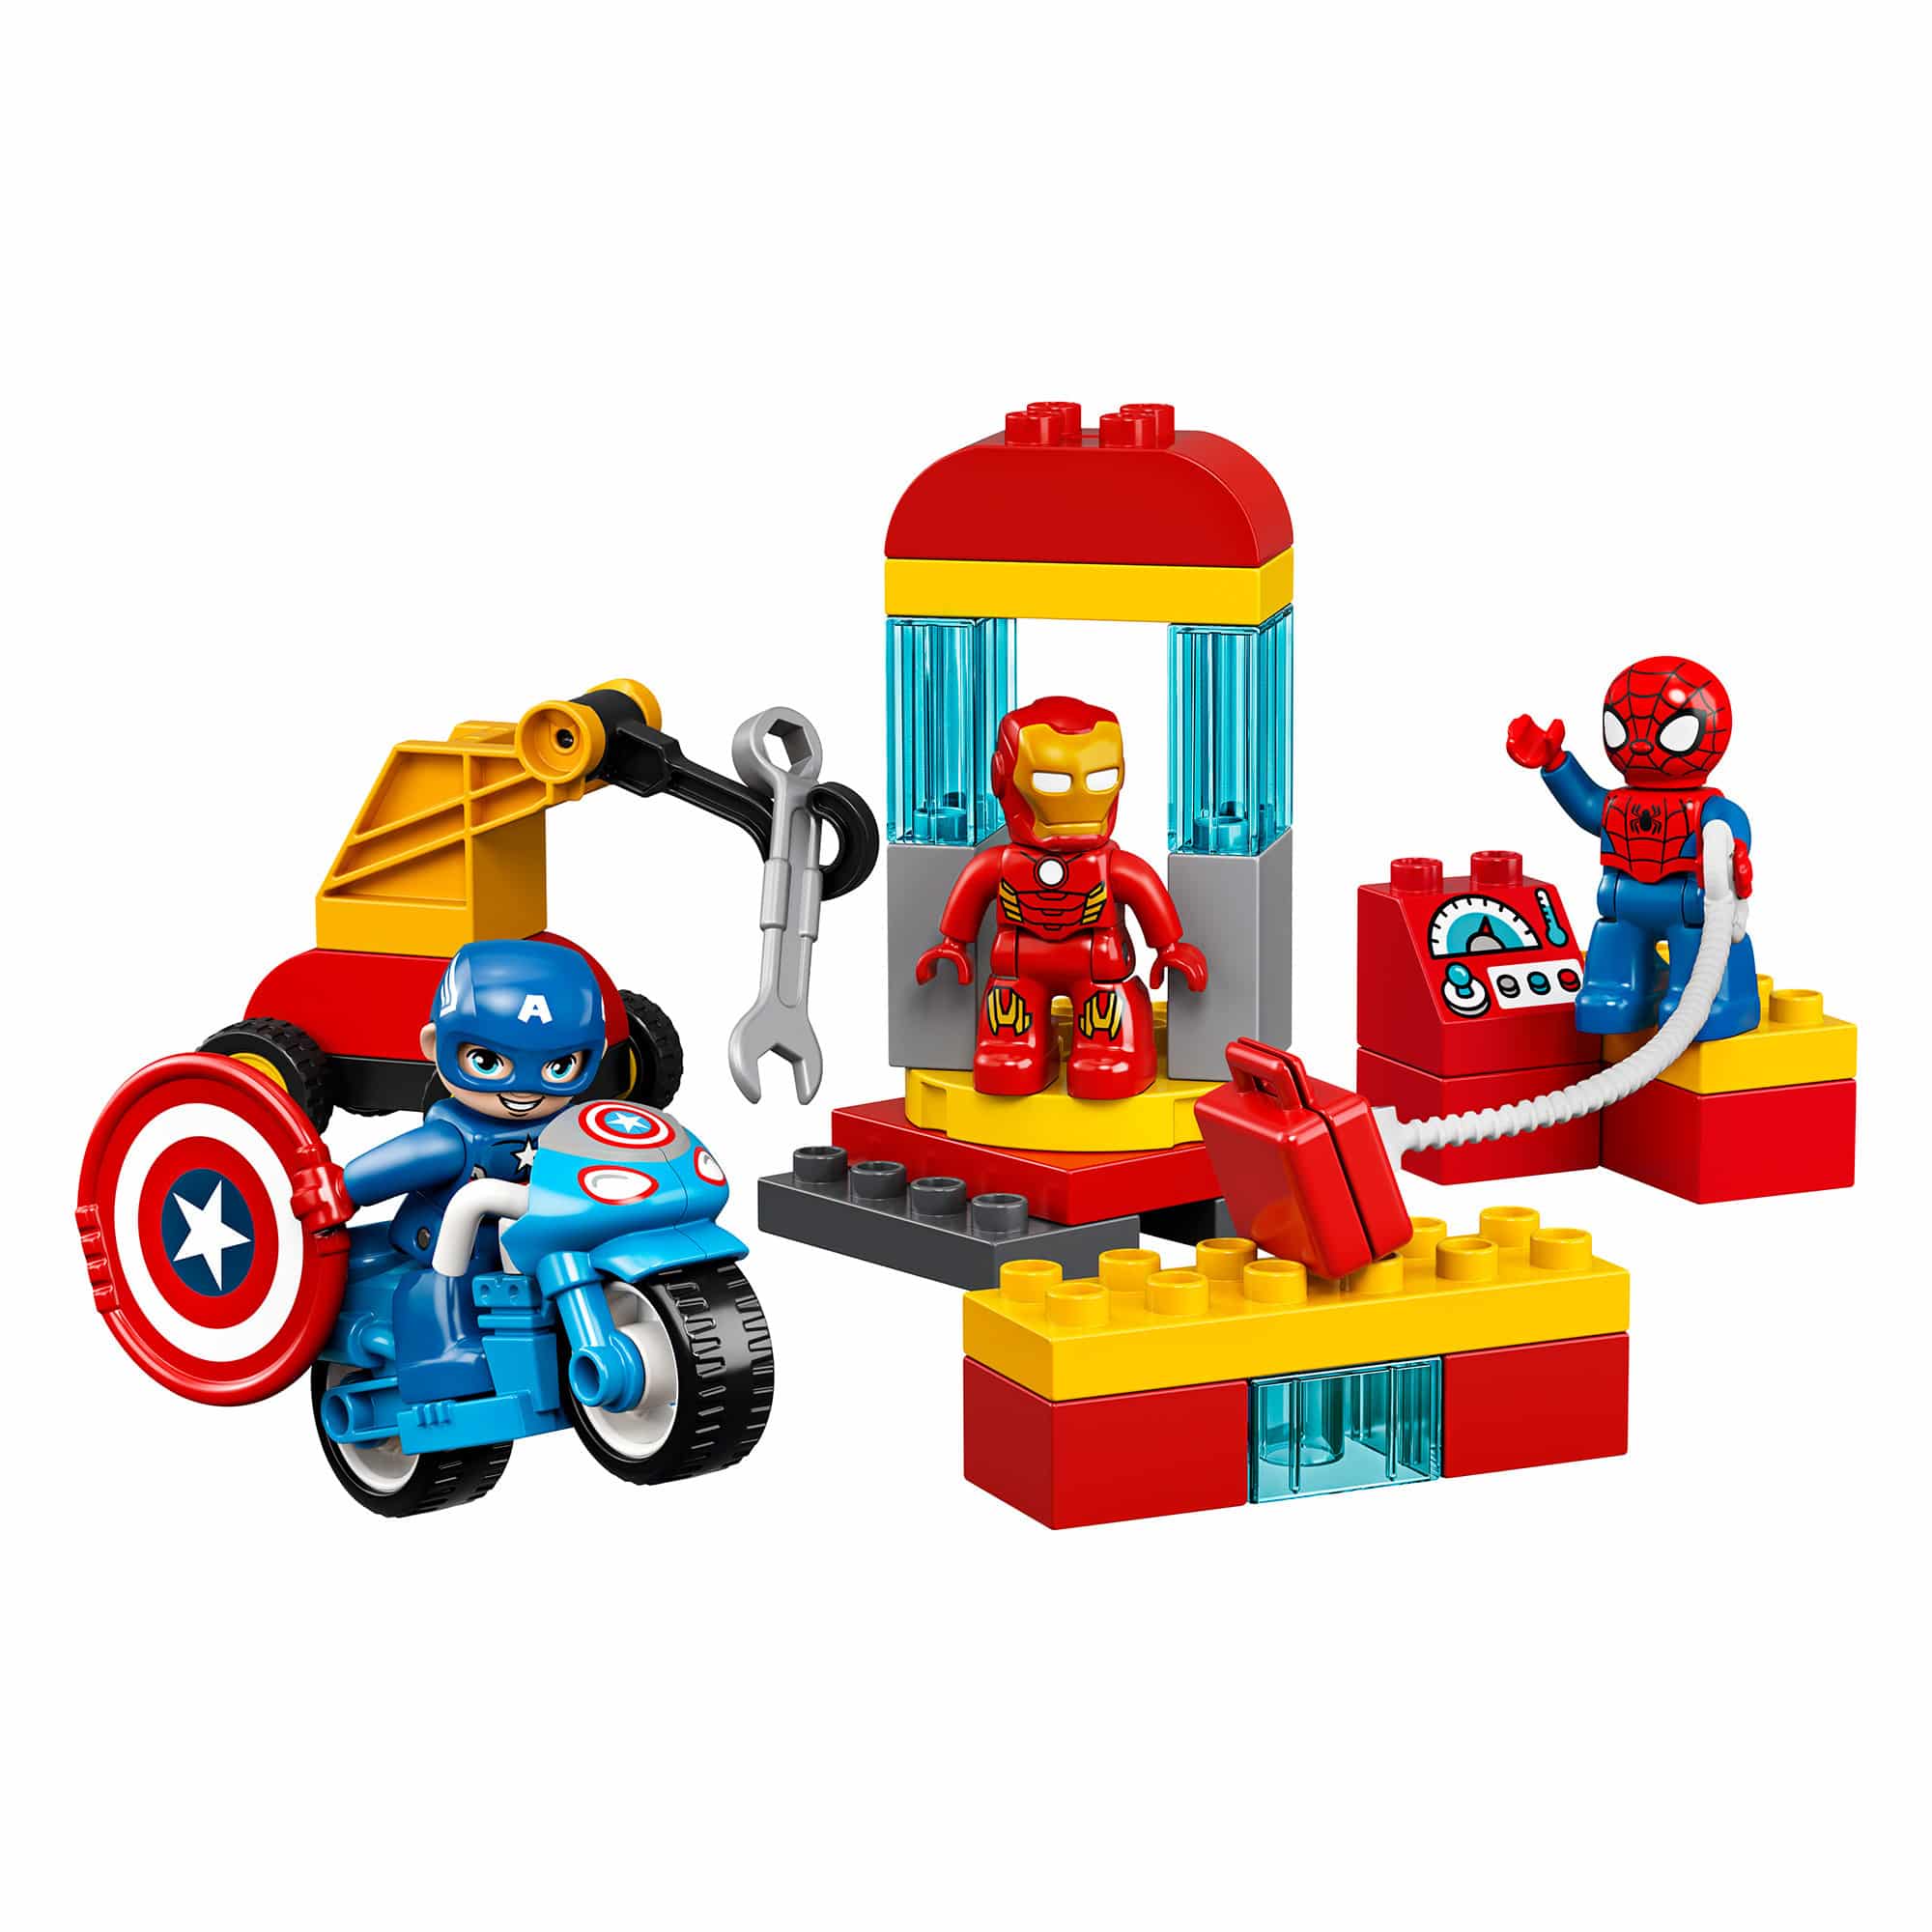 LEGO DUPLO 10921 - Super Hero Lab